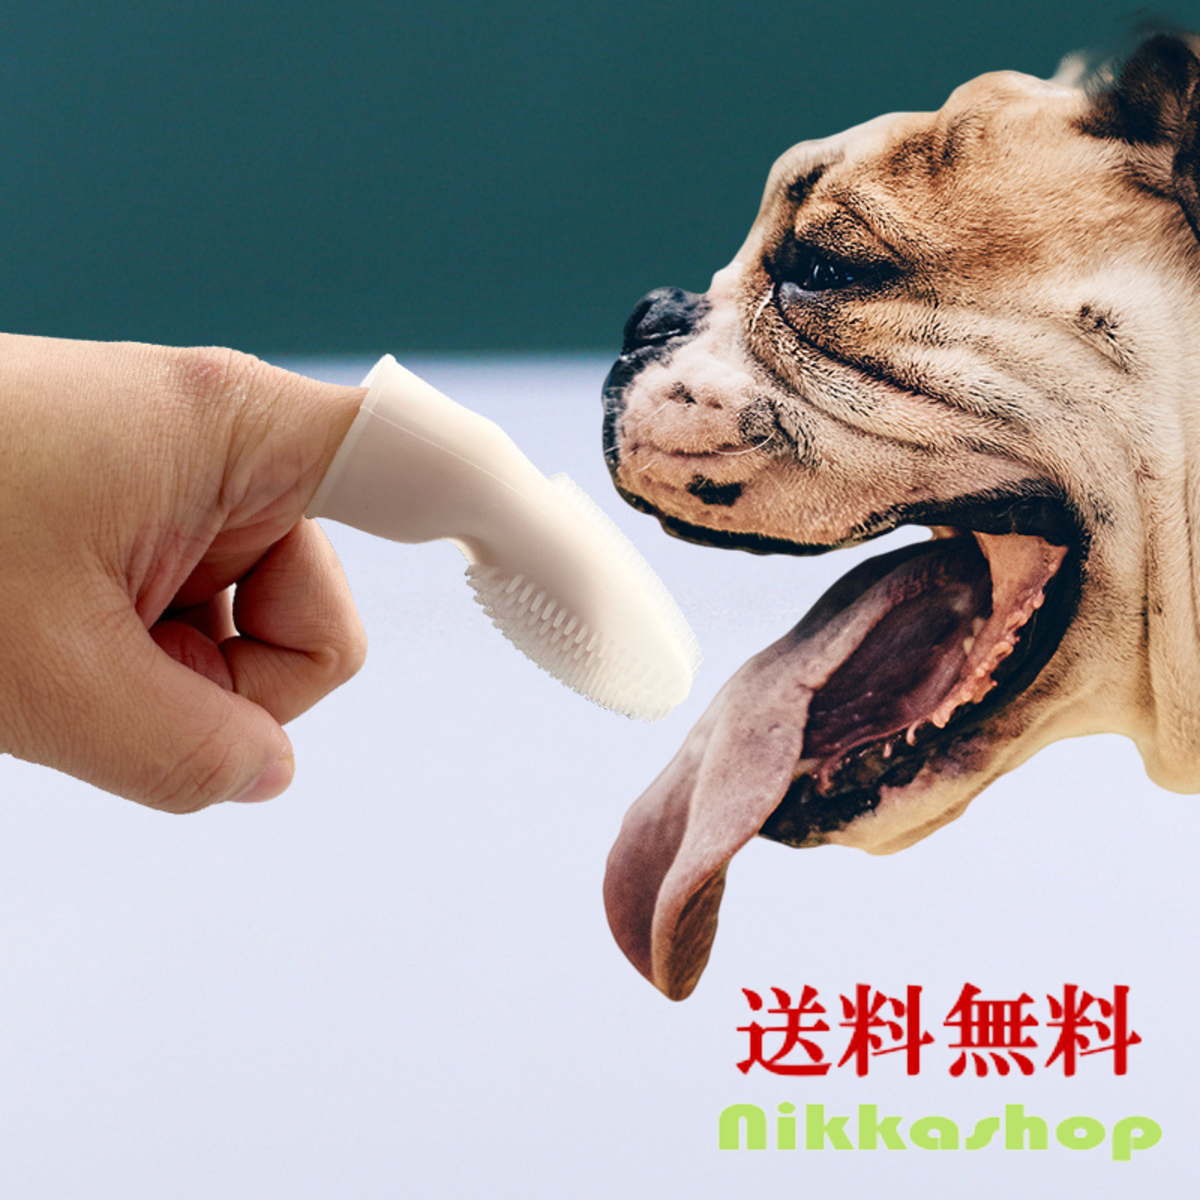 商品説明 特徴 使いやすい指サック型の犬歯ブラシです。 歯磨きの苦手なワンちゃんにおススメ！ やわらかいシリコン製で、歯に引っかかる心配がありません。 大型犬から 超小型犬まで, 猫にも使用可能です。 素材 シリコン 仕様 長さ：7.5cm、直径：2.5cm 原産国 中国 使用上のご注意 ※ご自身のわんちゃんの性格、行動を見極めてから、自己責任にてご使用くださいますようお願いいたします！ ※口腔内を傷つけないように十分注意して下さい。 ※ペット用以外には使用しないでください。 ※アレルギー・皮膚炎・傷・デキモノなど、皮膚や被毛にトラブルのあるペットには使用しないでください。 ※使用中、なにか異変を感じたときにはすぐに使用を中止し、獣医師や専門家にご相談下さい。商品説明 特徴 使いやすい指サック型の犬歯ブラシです。 歯磨きの苦手なワンちゃんにおススメ！ やわらかいシリコン製で、歯に引っかかる心配がありません。 大型犬から 超小型犬まで, 猫にも使用可能です。 素材 シリコン 仕様 長さ：7.5cm、直径：2.5cm 原産国 中国 使用上のご注意 ※ご自身のわんちゃんの性格、行動を見極めてから、自己責任にてご使用くださいますようお願いいたします！ ※口腔内を傷つけないように十分注意して下さい。 ※ペット用以外には使用しないでください。 ※アレルギー・皮膚炎・傷・デキモノなど、皮膚や被毛にトラブルのあるペットには使用しないでください。 ※使用中、なにか異変を感じたときにはすぐに使用を中止し、獣医師や専門家にご相談下さい。